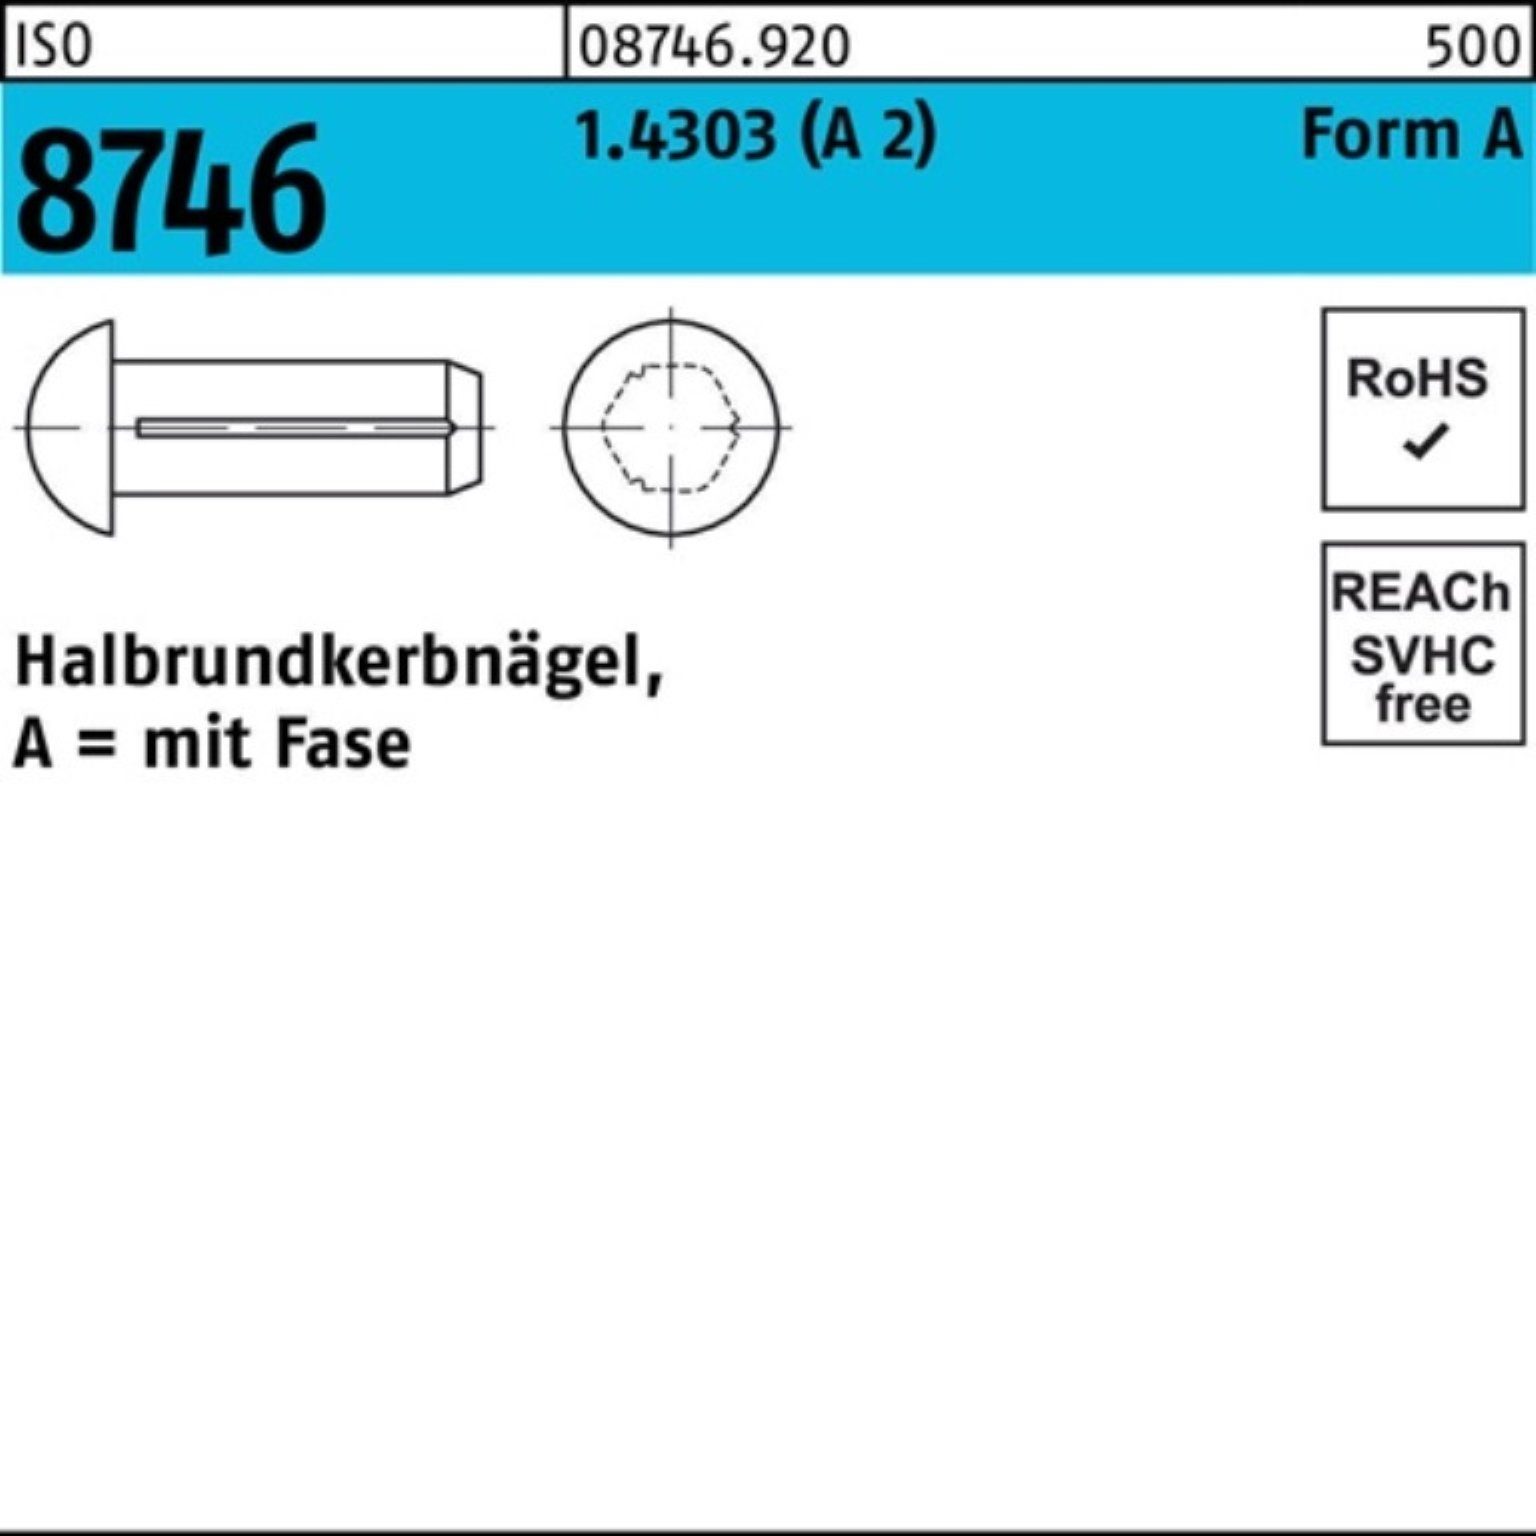 Reyher ISO 5x 100er Fase 2) 12 Nagel Halbrundkerbnagel 1.4303 8746 Pack 100 Stü (A